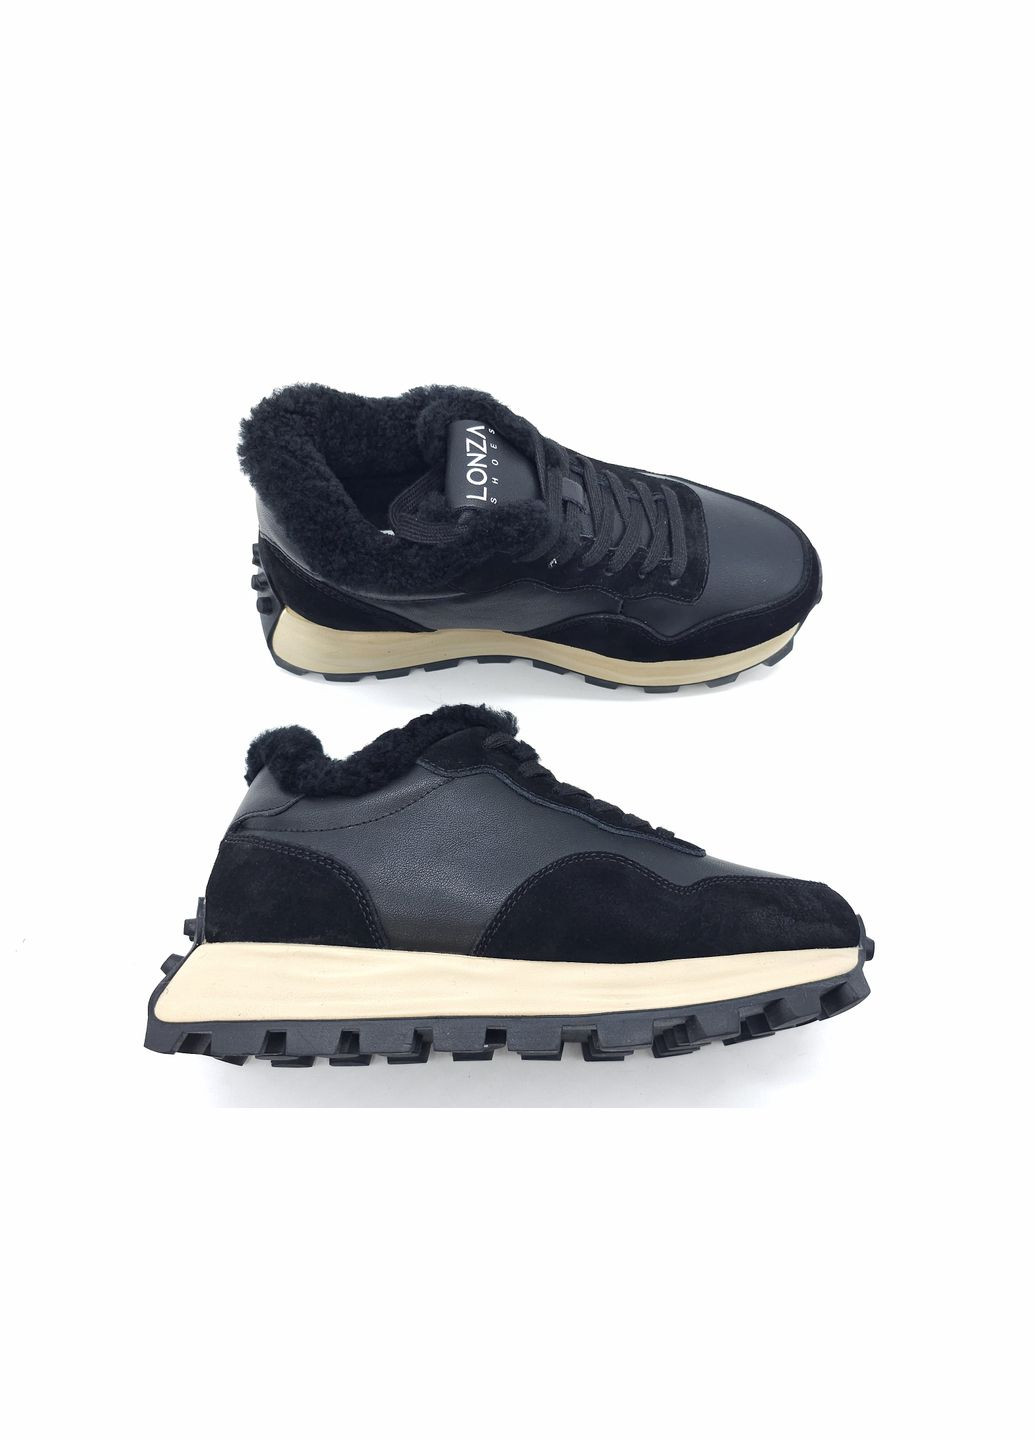 Черные всесезонные женские кроссовки зимние черные кожаные l-14-6 23 см(р) Lonza